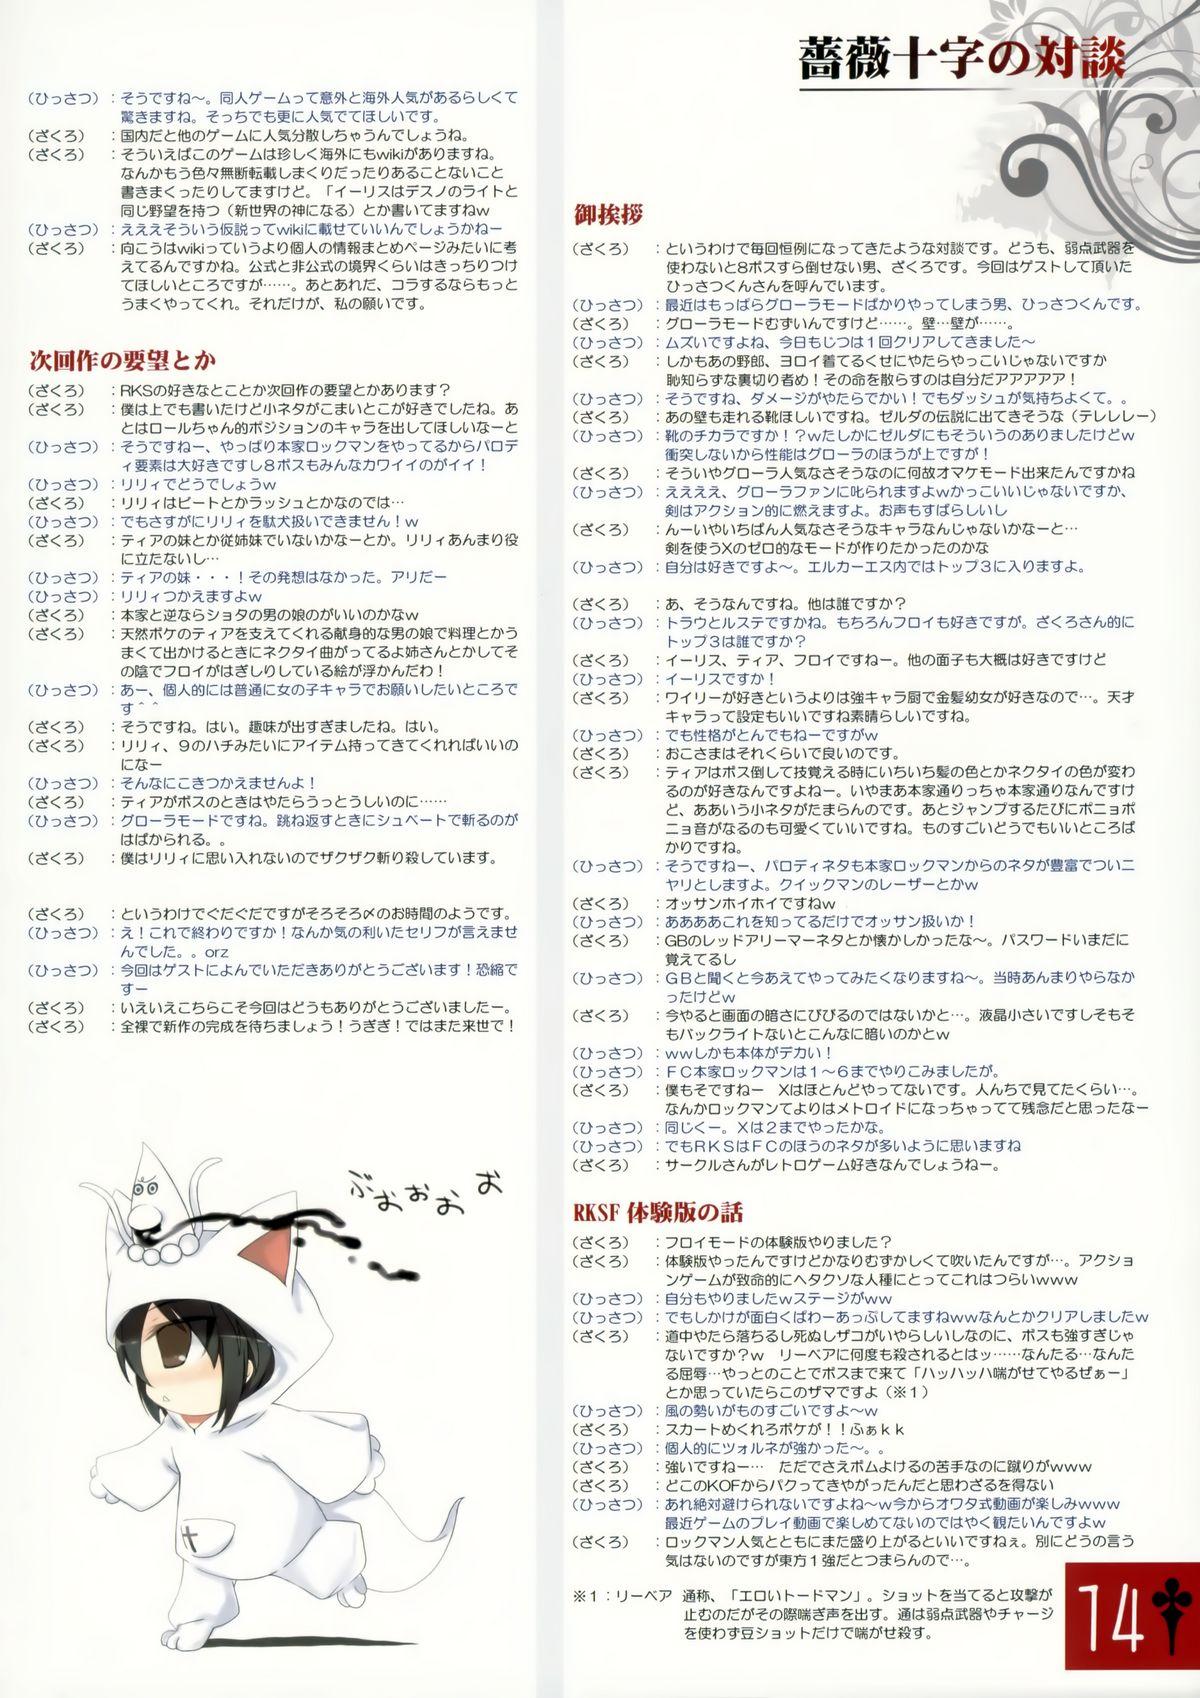 Mms Fukurou no you ni Himawari - Rosenkreuzstilette Peeing - Page 14